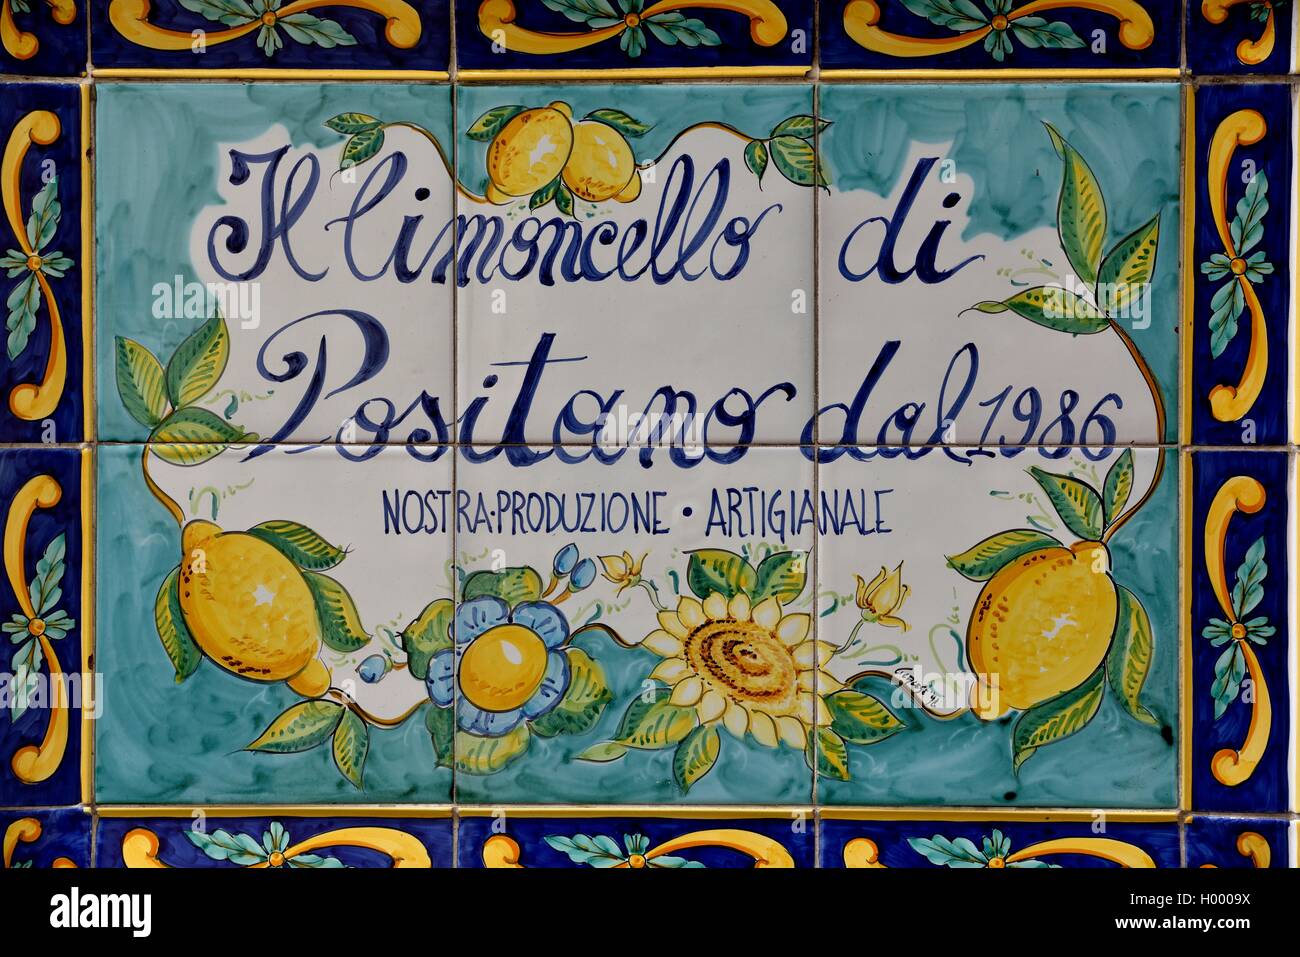 Los azulejos de la pared con la publicidad de Limoncello, licor italiano de limones, Positano, Amalfi, Costiera Amalfitana Foto de stock